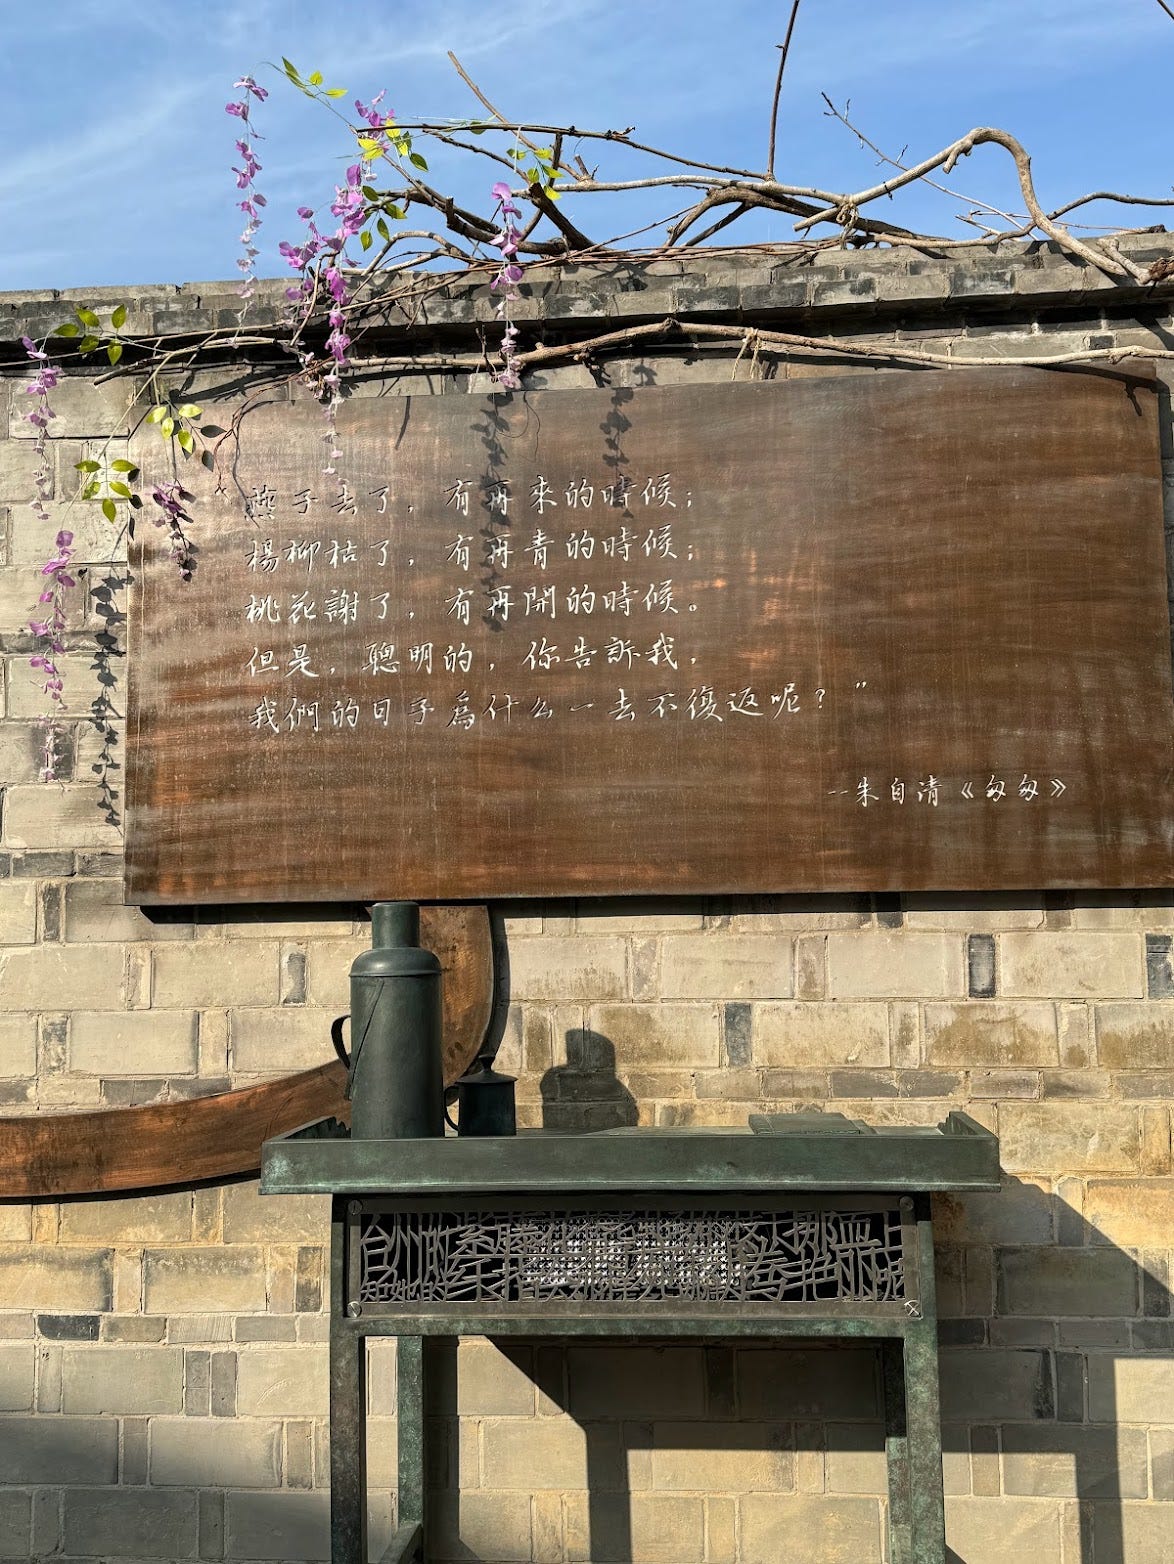 Poem on brick wall